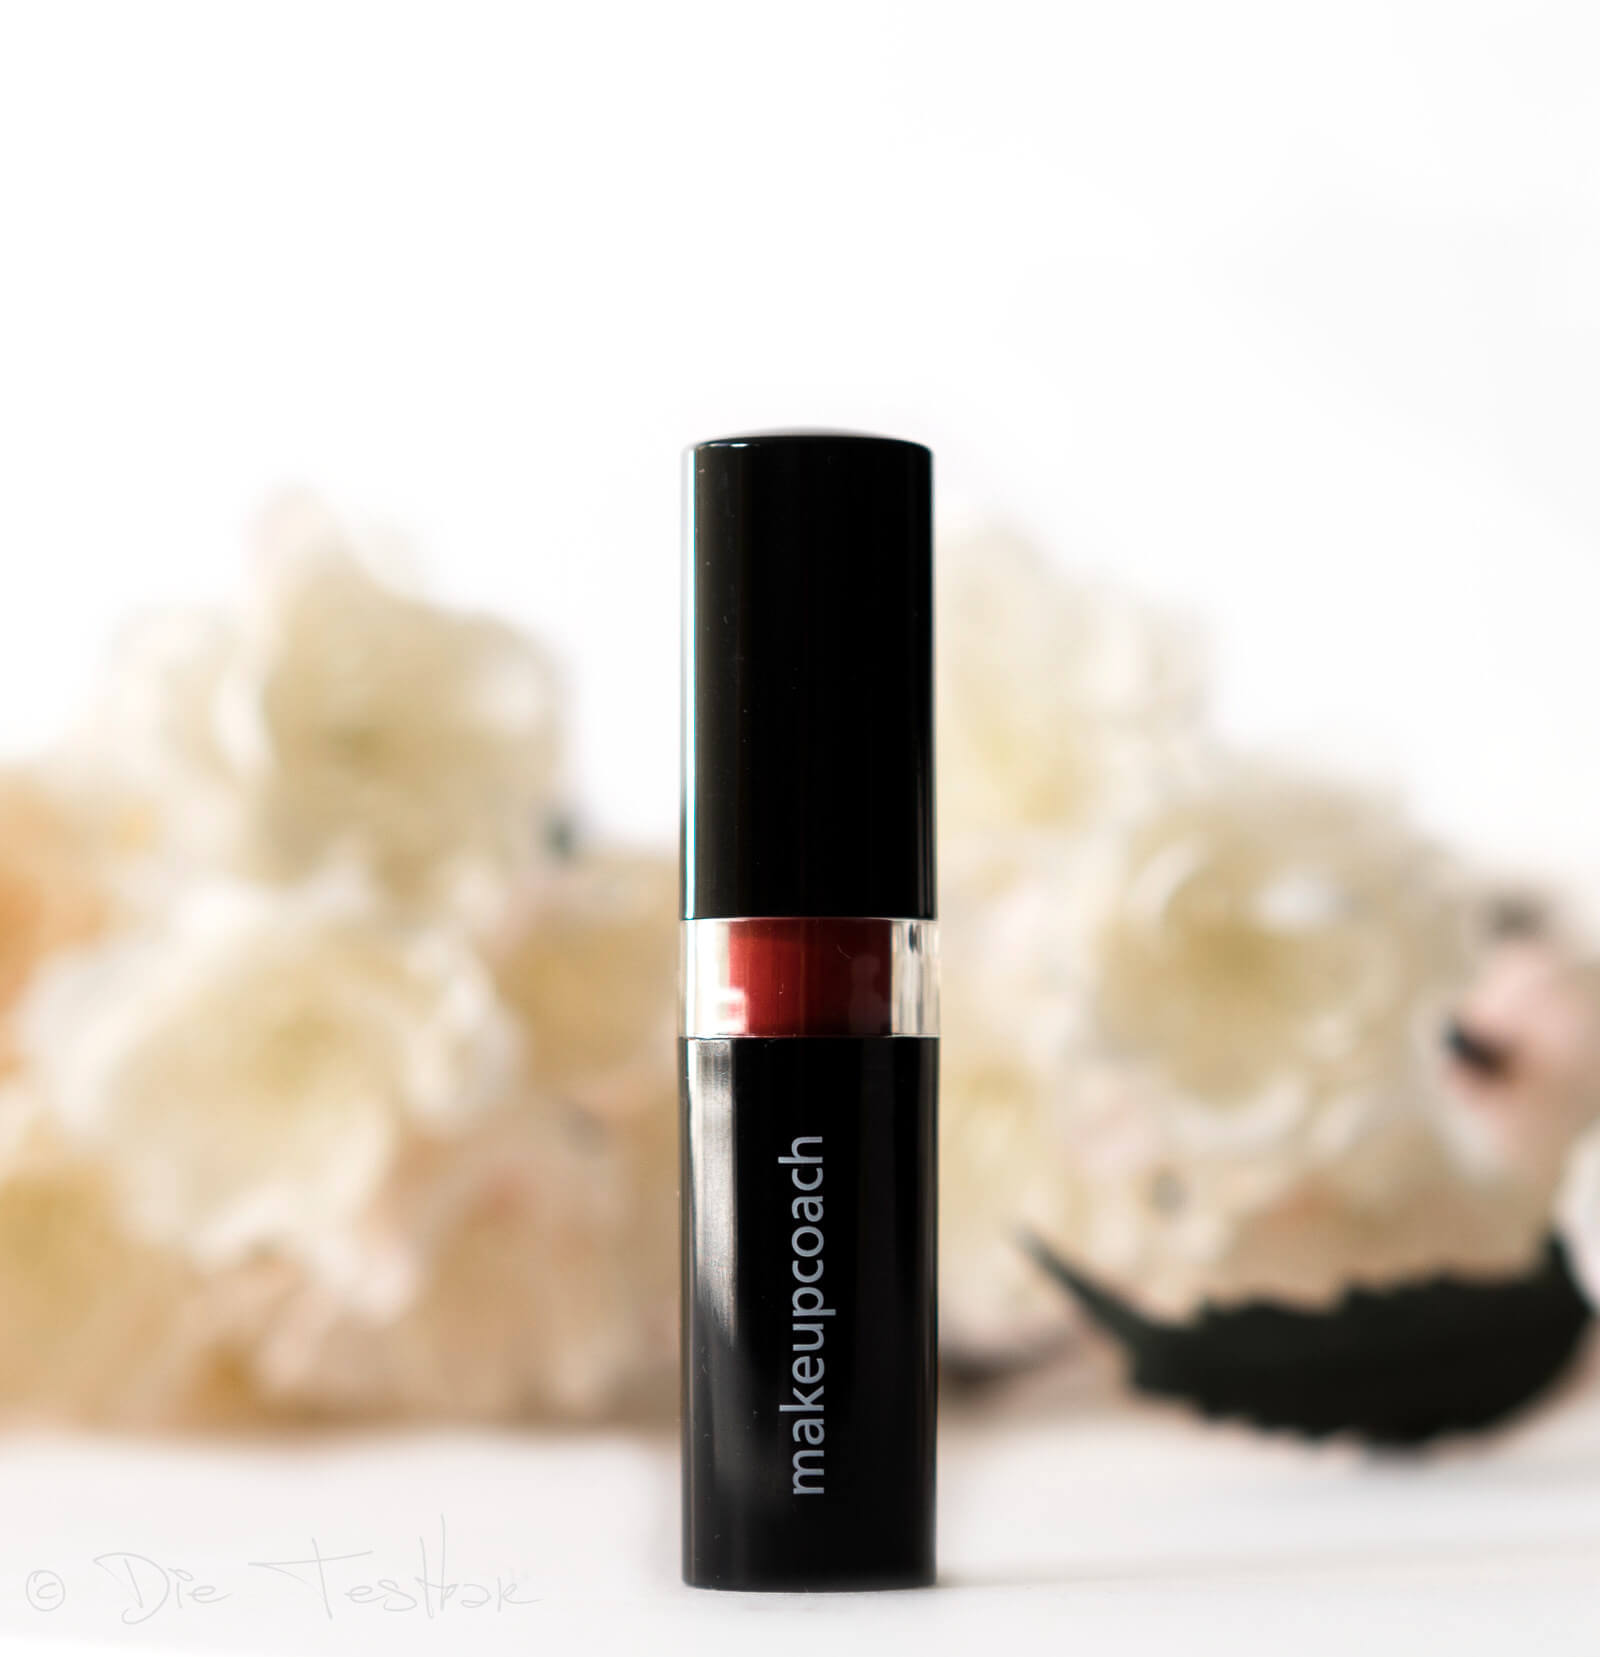 Für ein wunderschönes Augen- und Lippen-Make-up - Hochwertige Produkte von makeupcoach 29